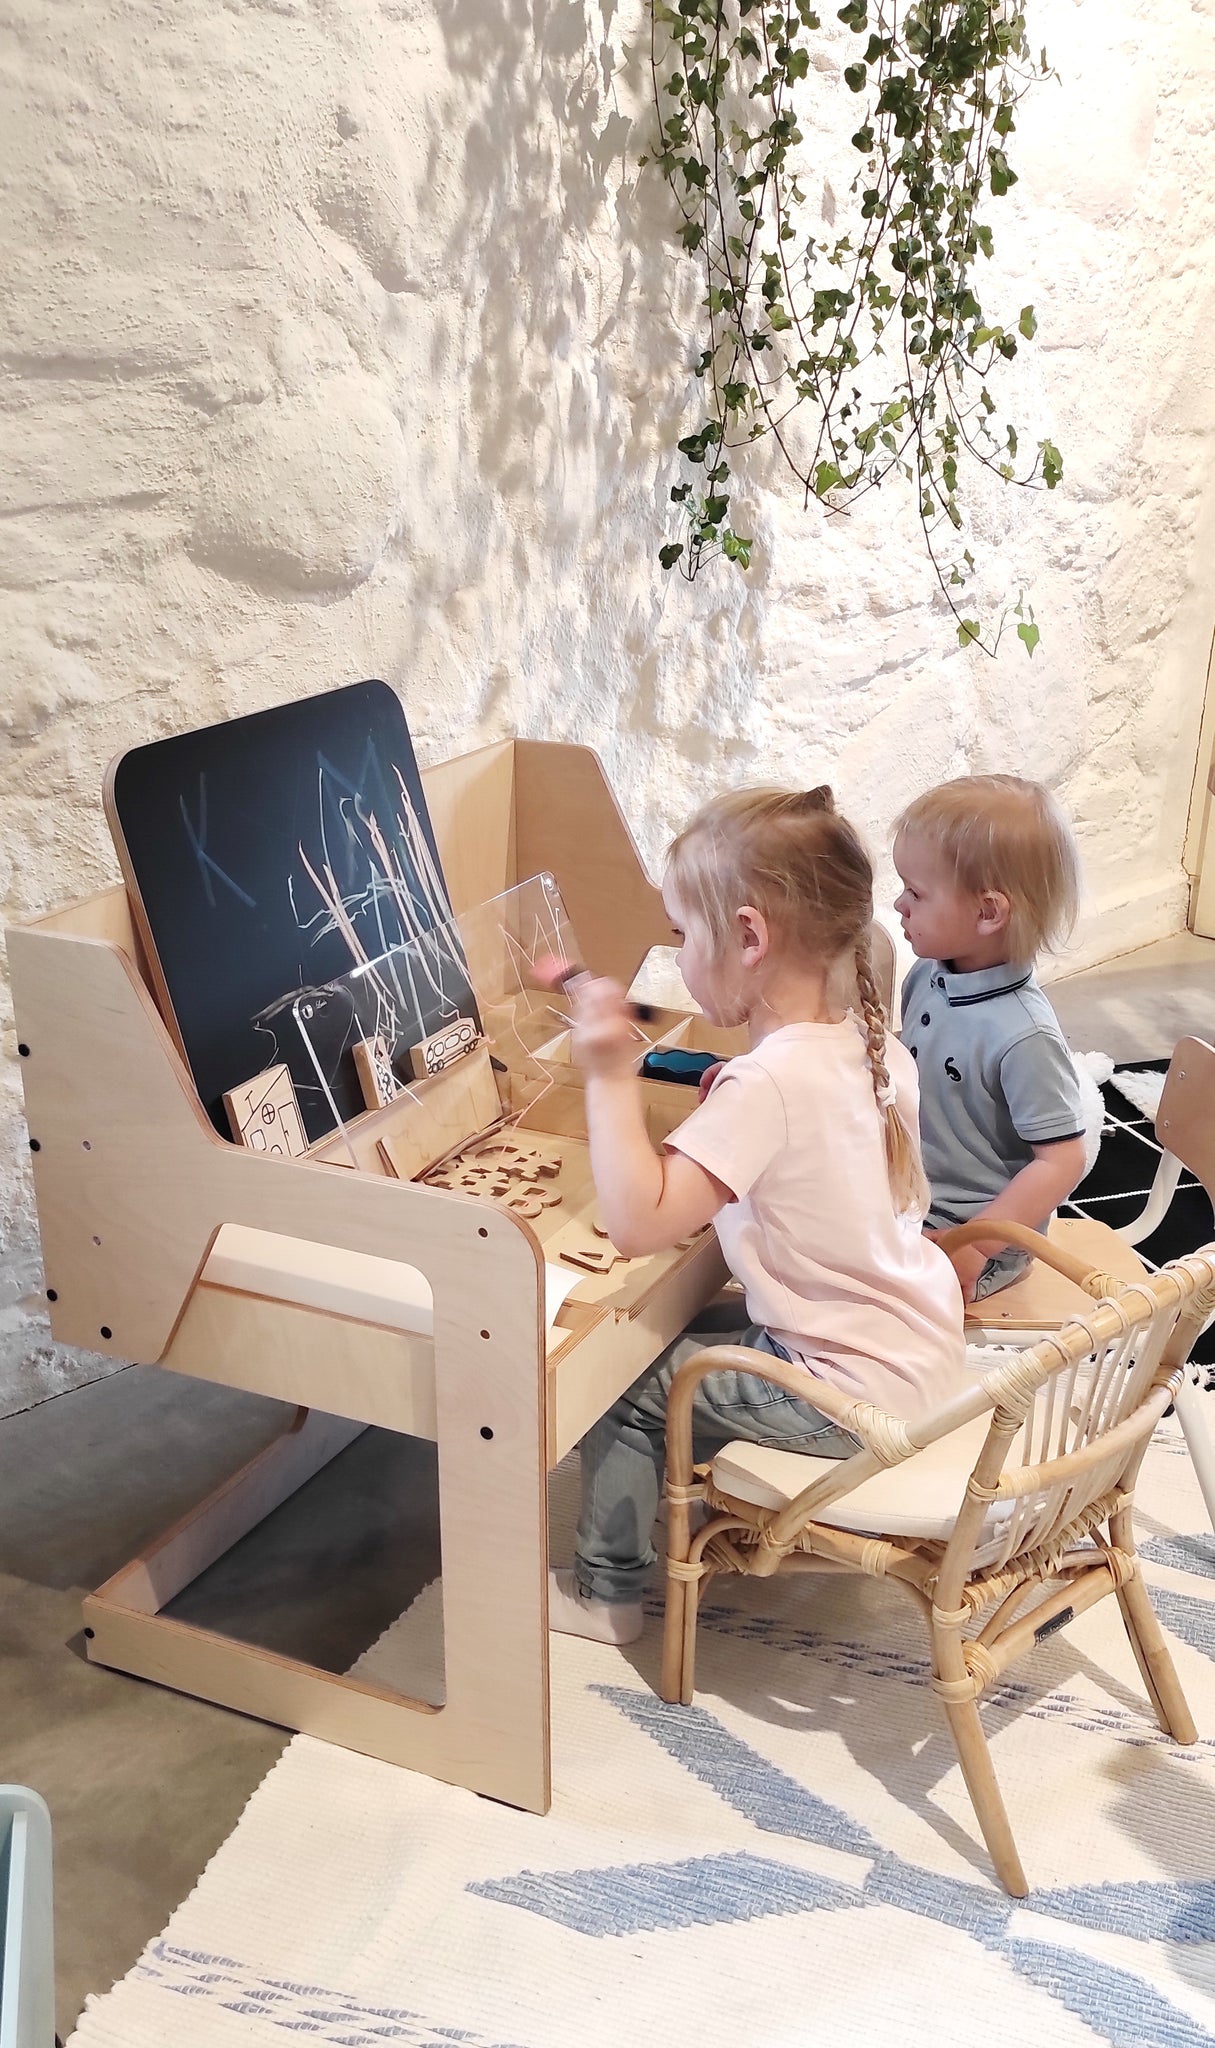 Table Montessori et Chaise Enfant - Bois naturel